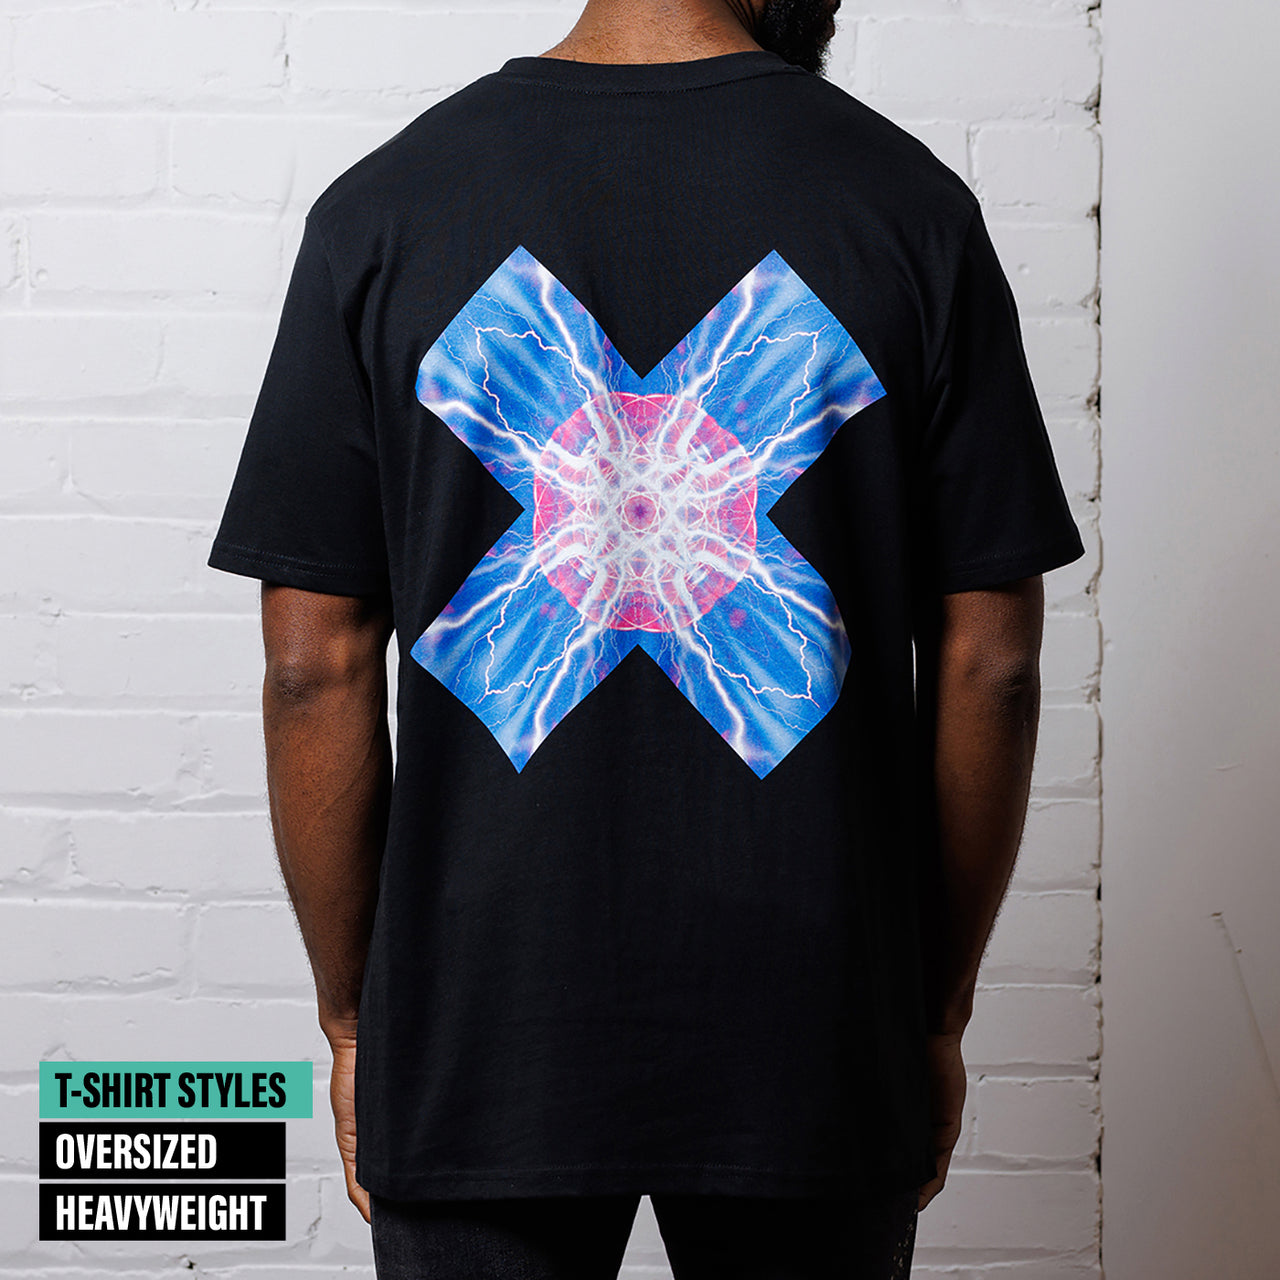 Plasma X Imprint - Tshirt - Black